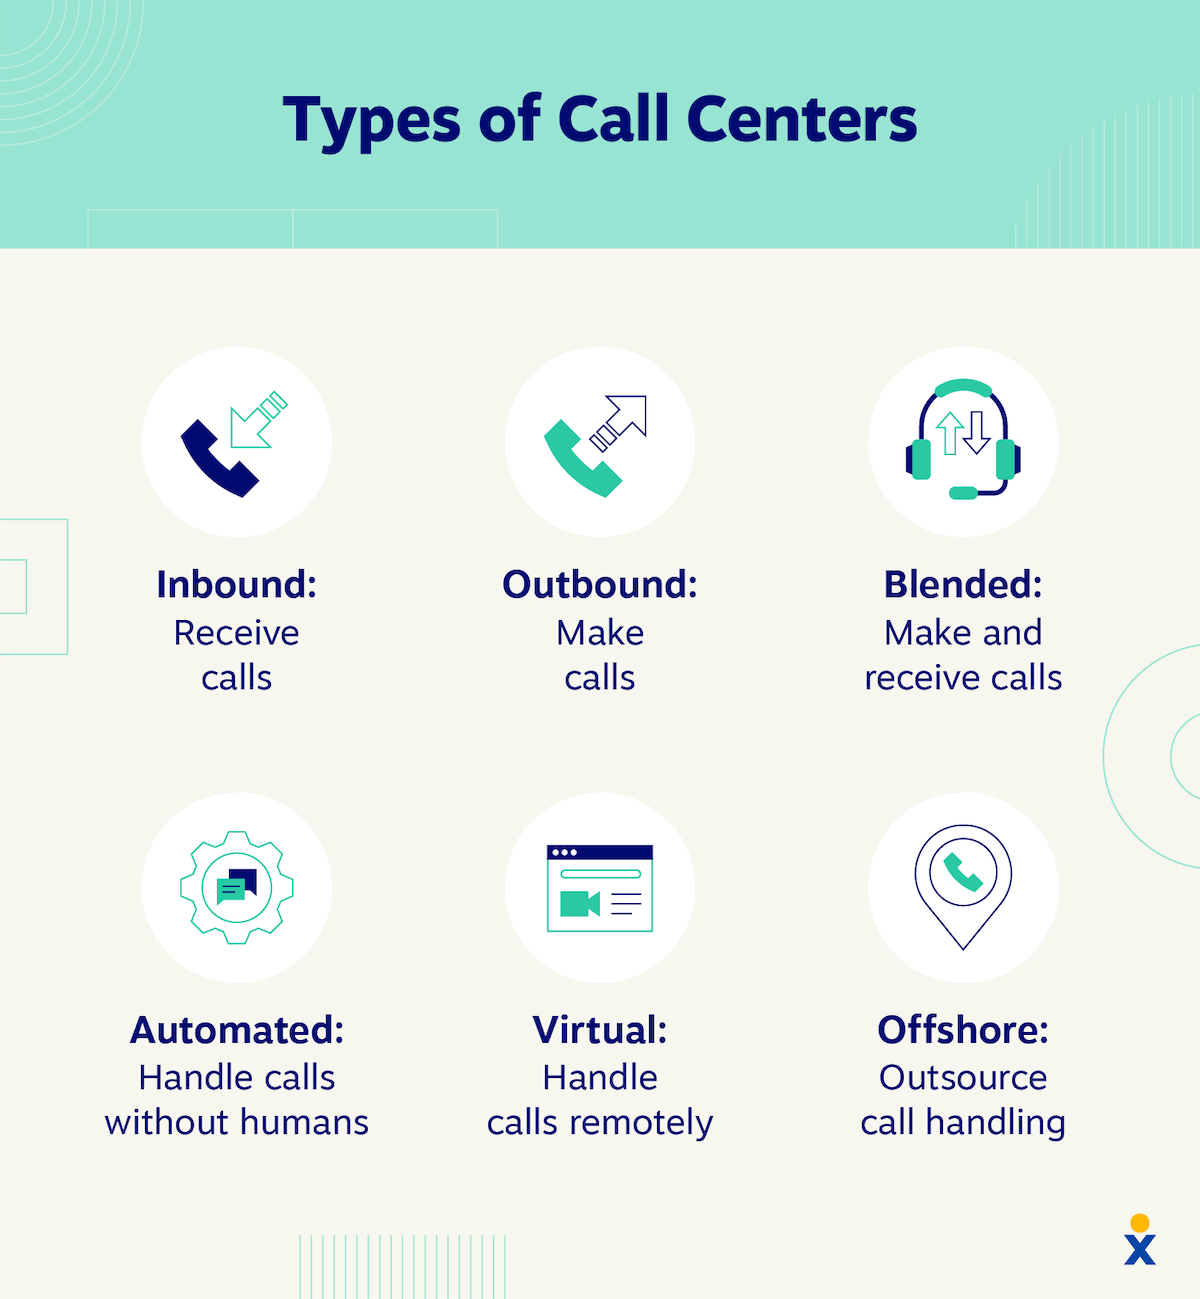 呼叫中心的类型，包括呼入、呼出、混合、自动化、虚拟和离岸。